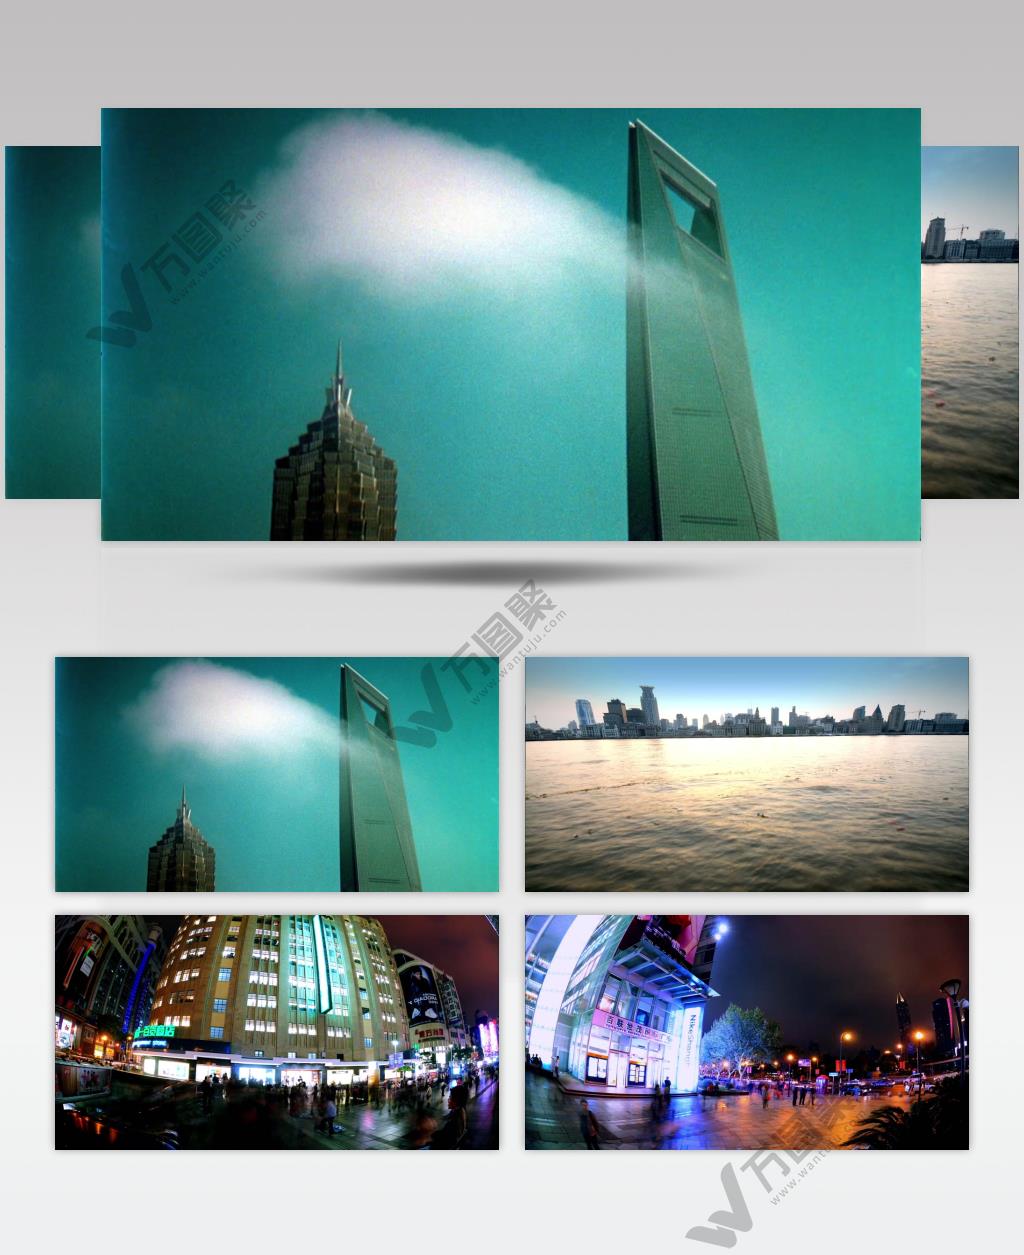 大厦外观和上海城市夜景上海高清宣传片上海各种高清实拍素材系列_batch城市实拍视频 城市宣传片